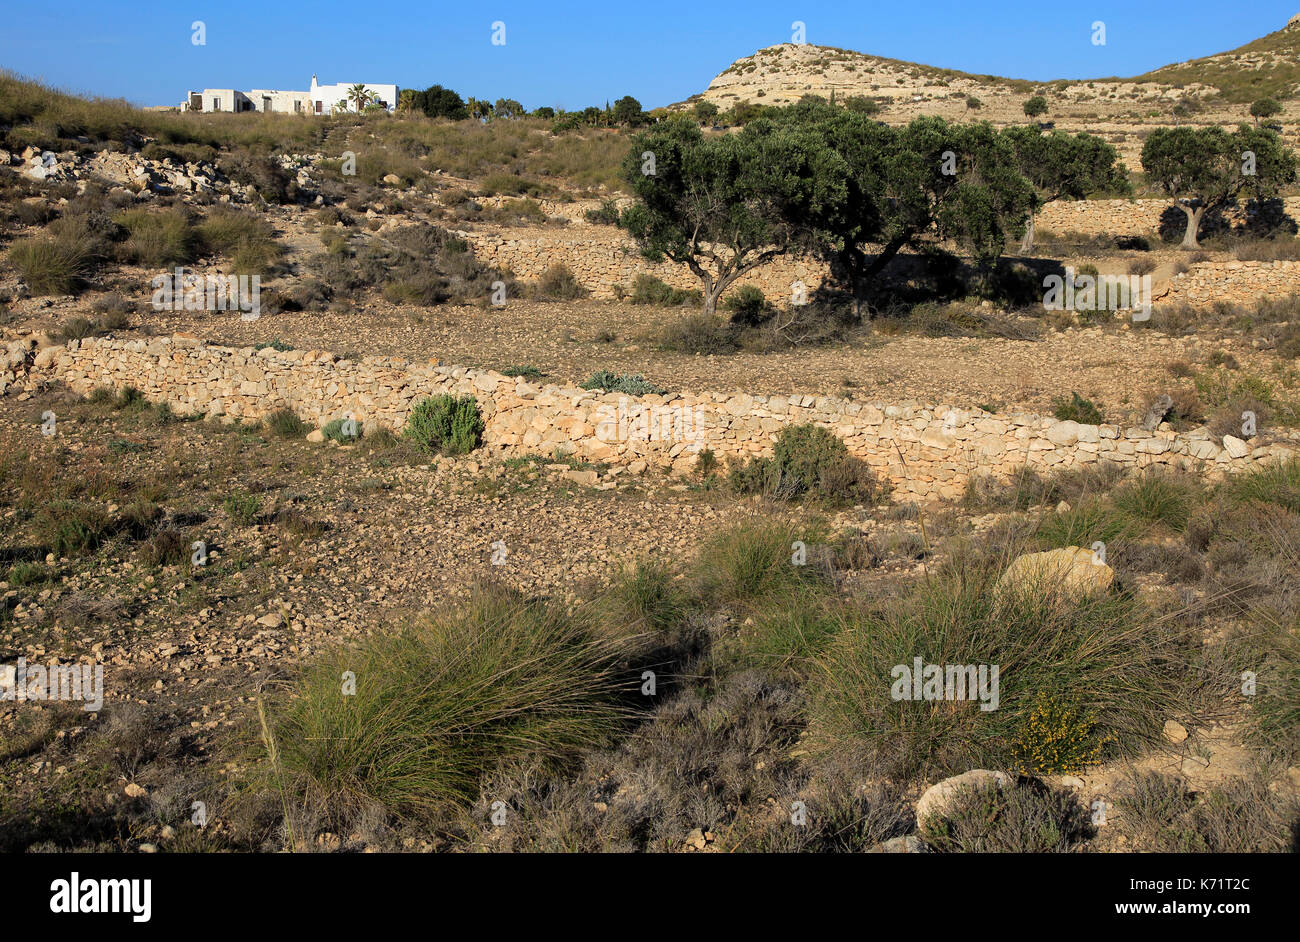 L'olivier en terres agricoles semi désert, Rodalquilar, parc naturel de Cabo de Gata, Almeria, Espagne Banque D'Images